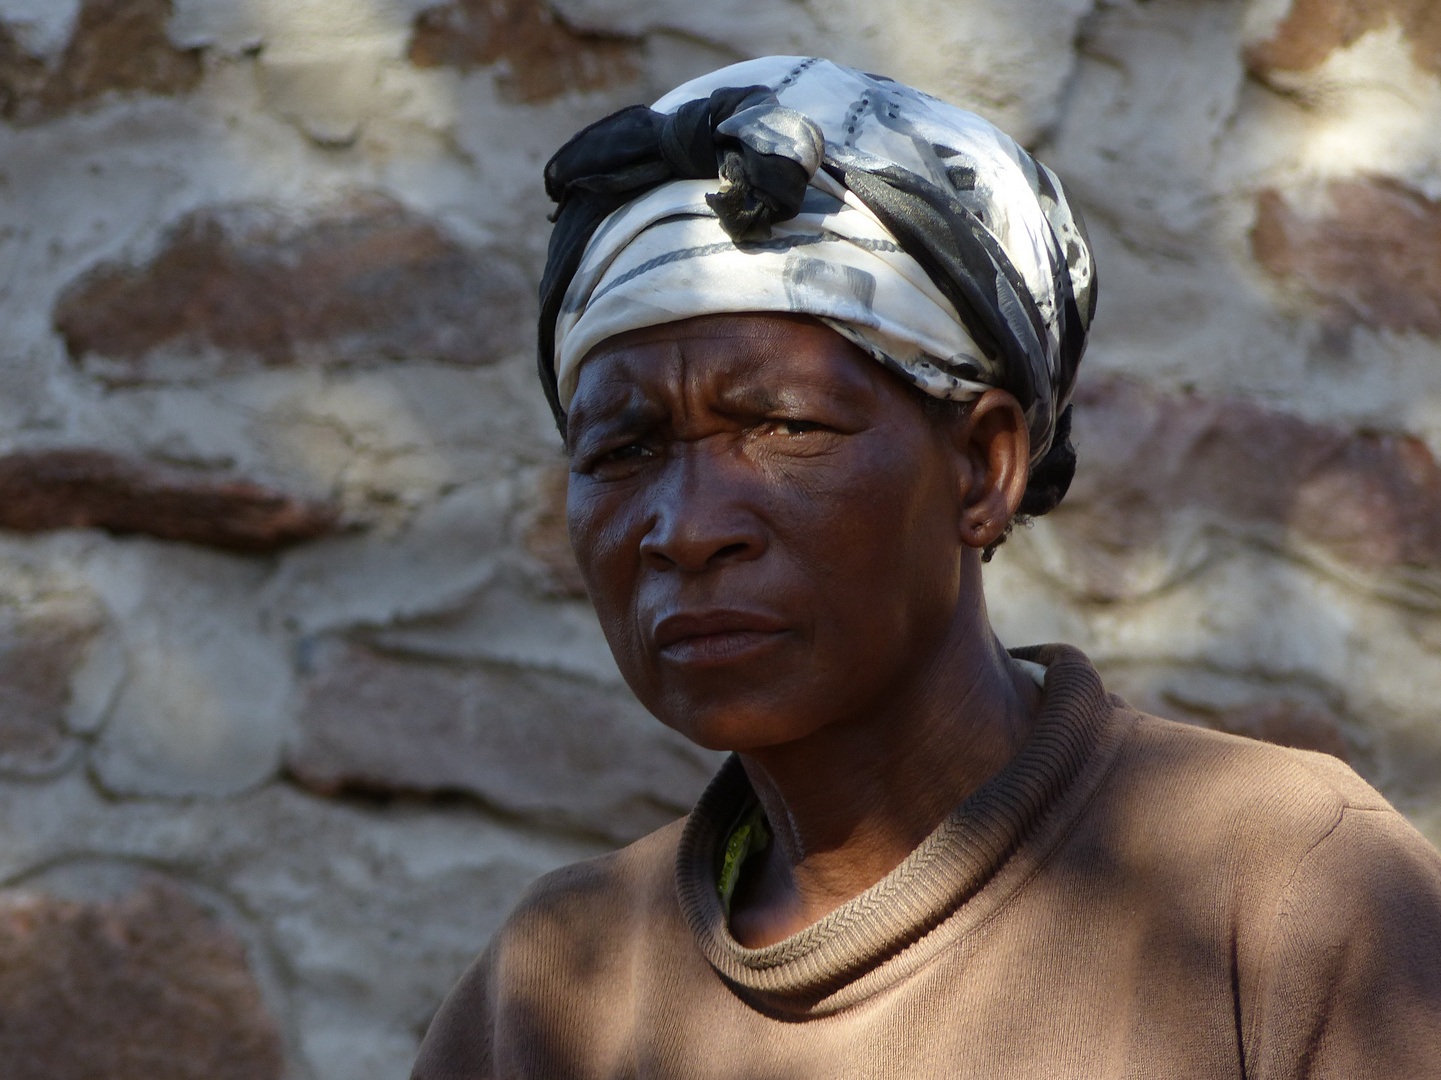 Zulu woman - South Africa